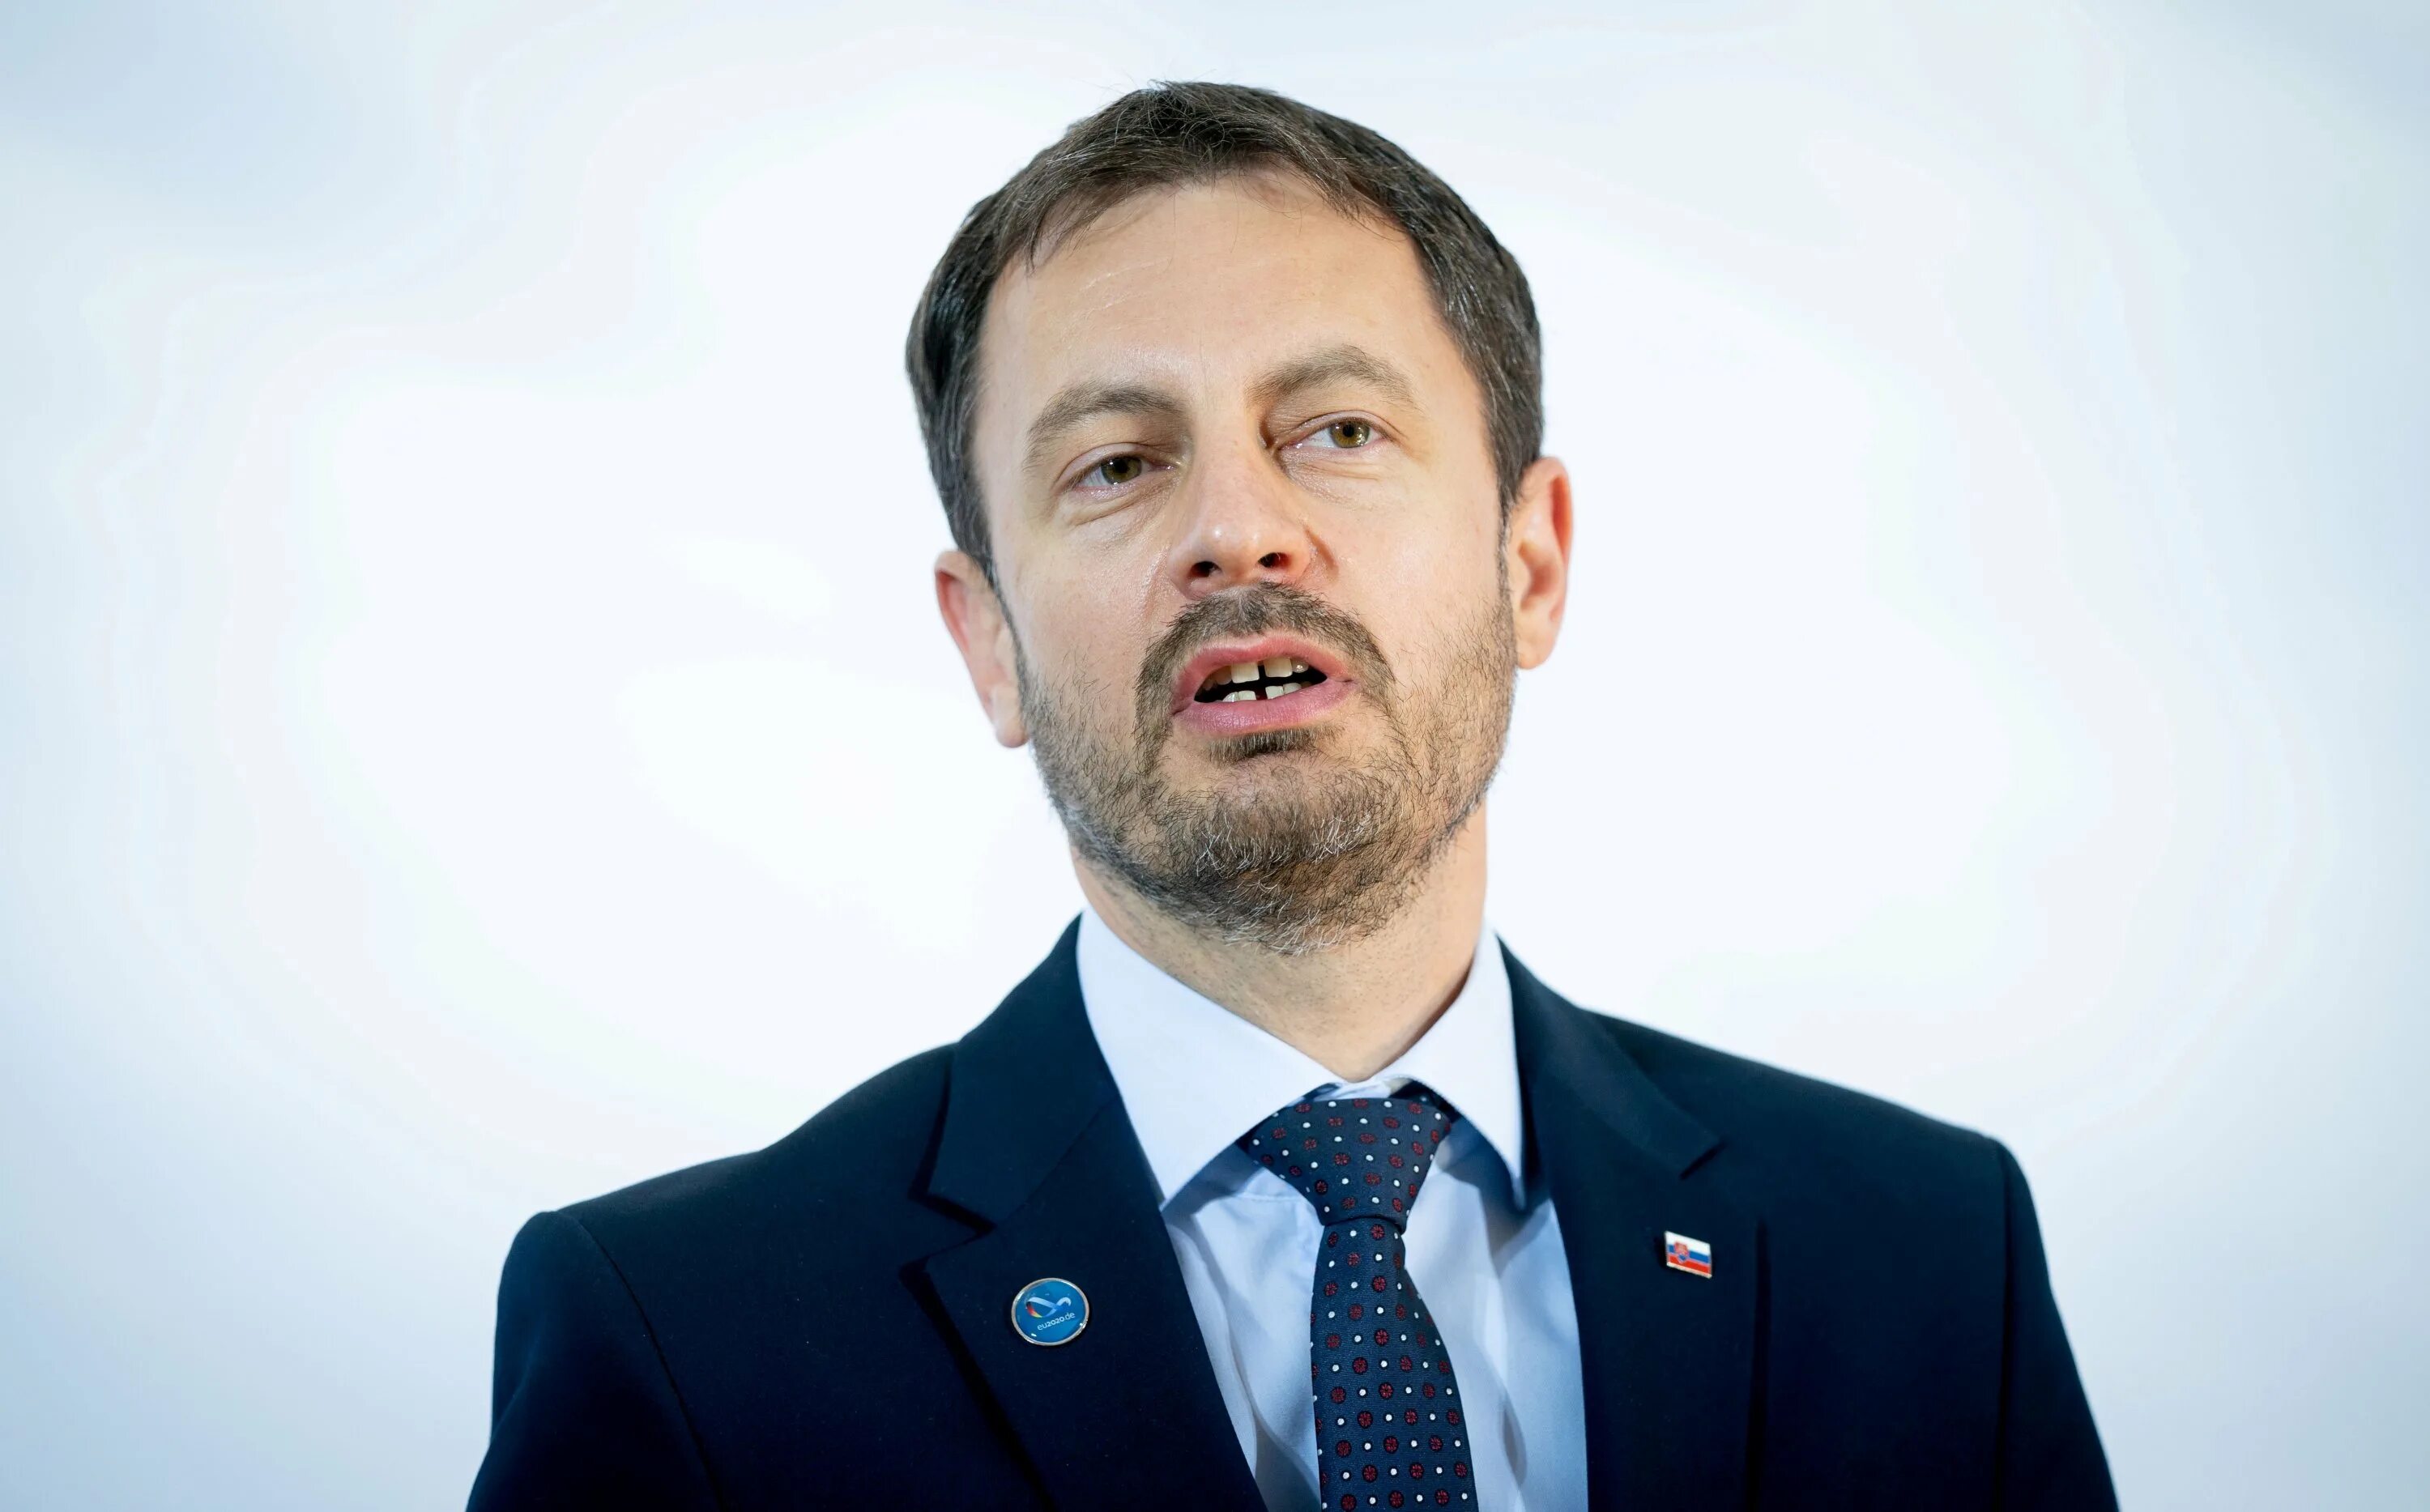 Премьер министр Словакии 2022. Премьер министр изображенный на